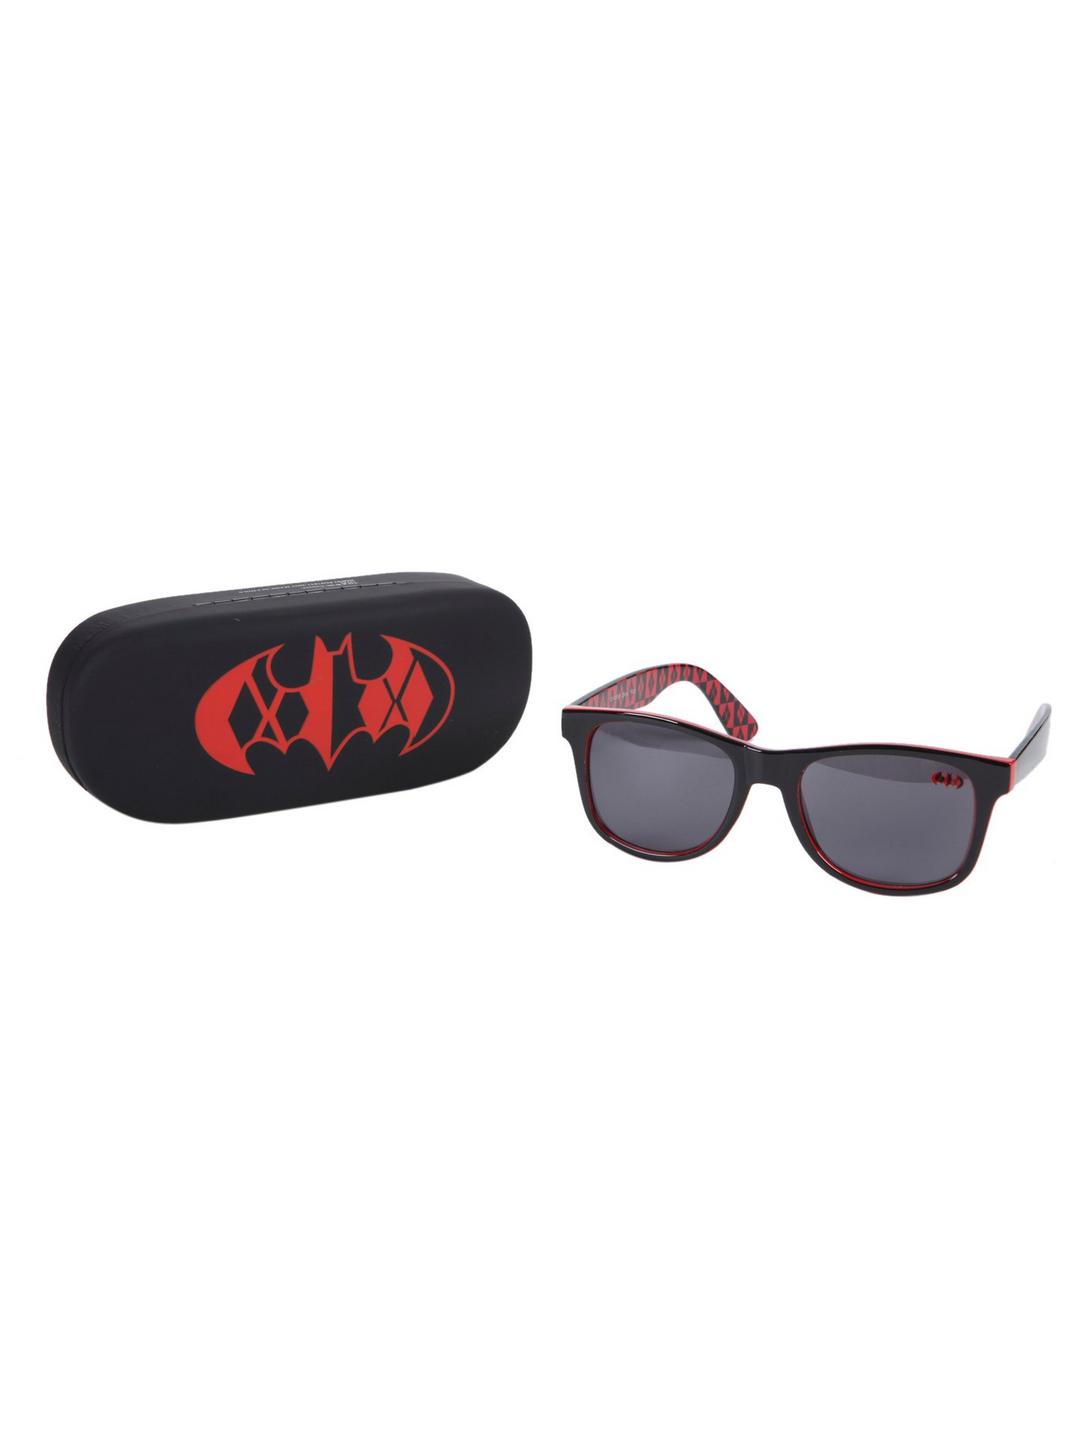 DC Comics Harley Quinn Sunglasses & Case Gift Set, , hi-res